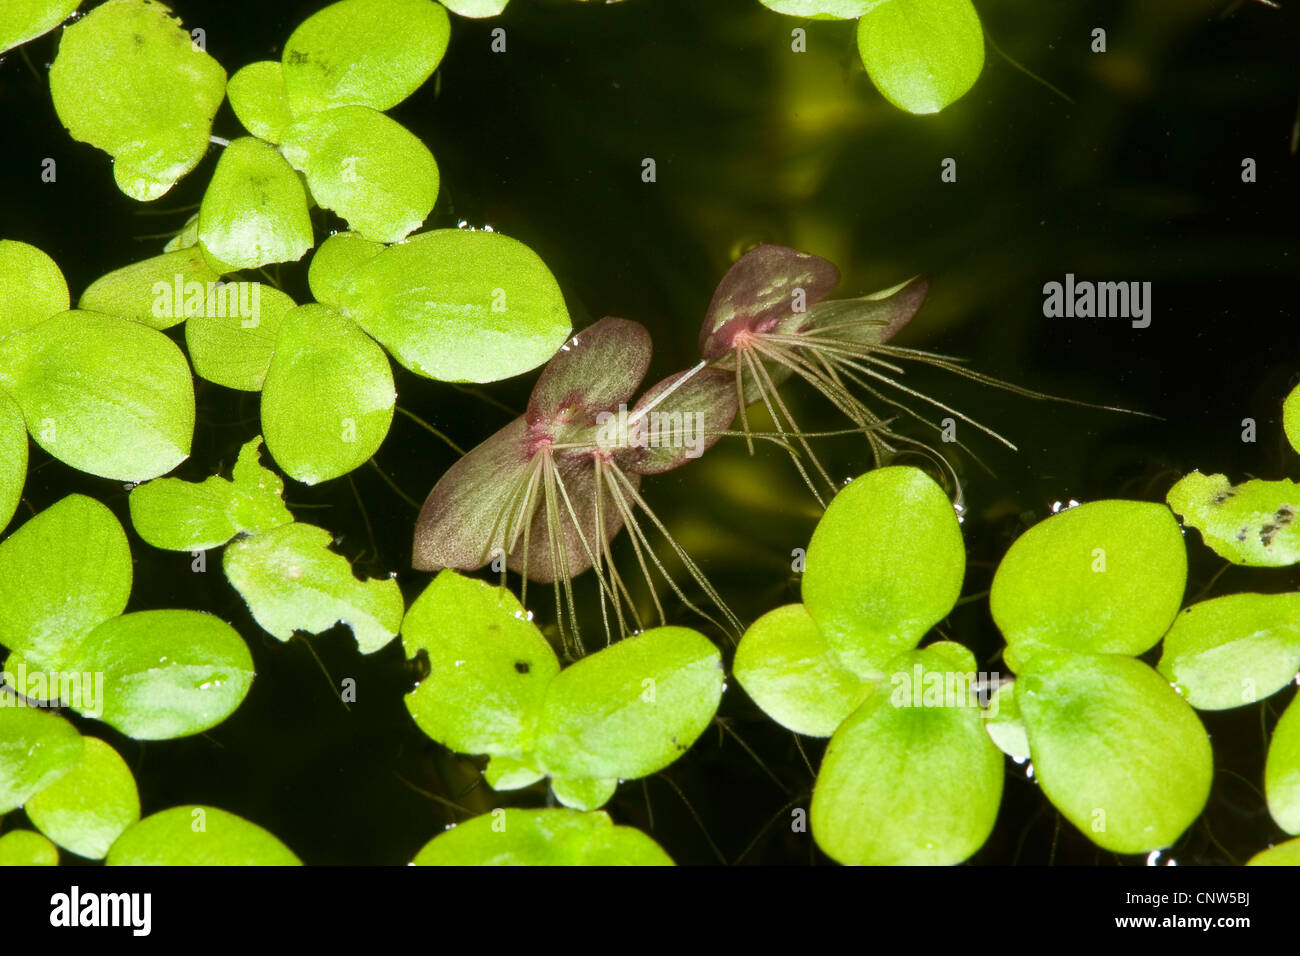 giant duckweed, greater duckweed, common water-flaxseed (Spirodela polyrhiza), floating on water, Germany Stock Photo